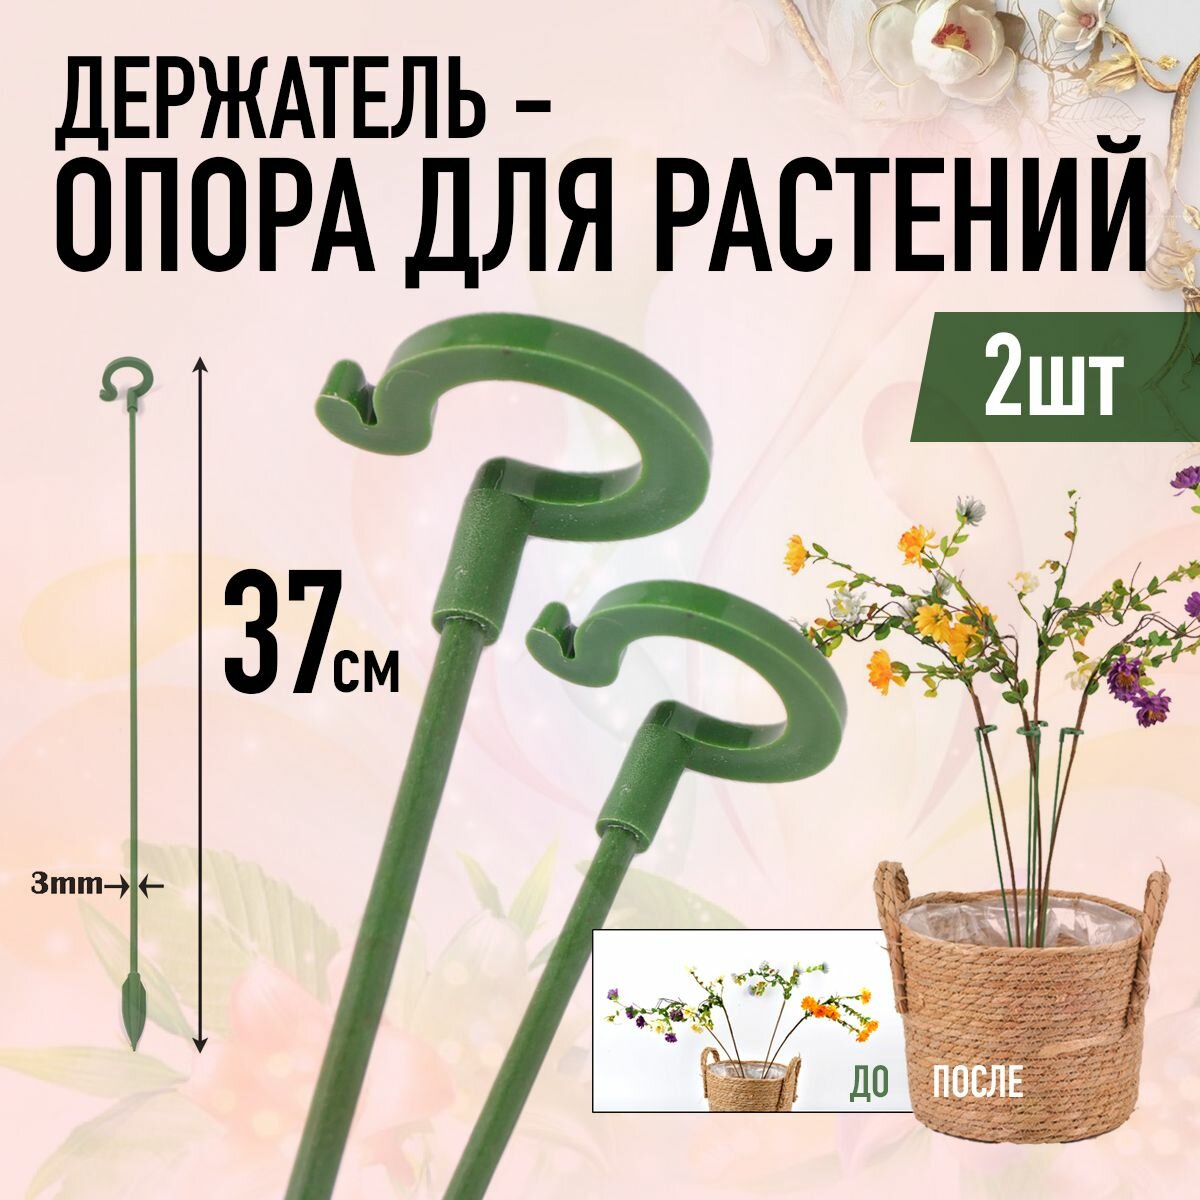 Держатель опора для растений 37 см (2шт, Зелёные)